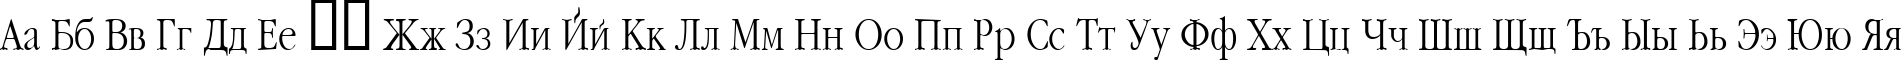 Пример написания русского алфавита шрифтом Classic